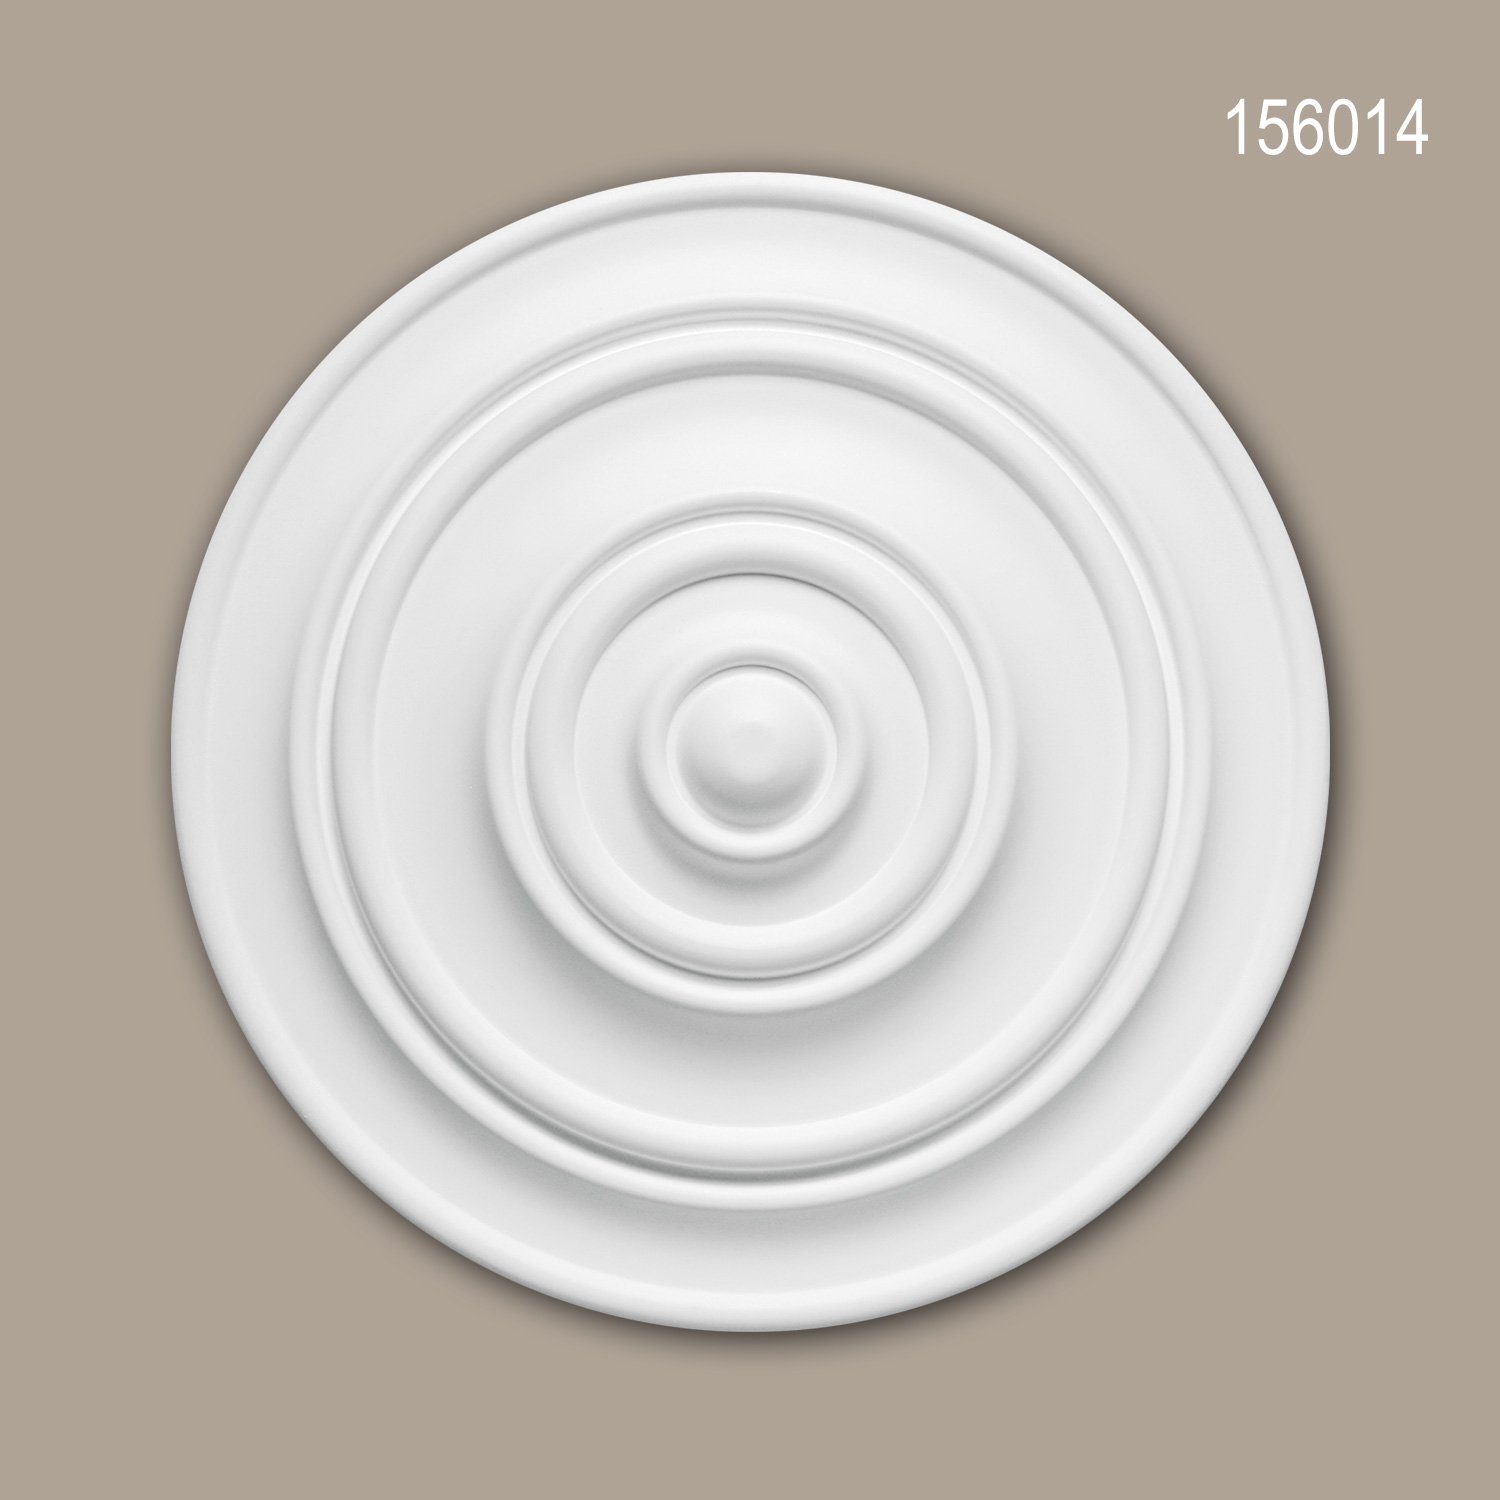 Profhome Decken-Rosette 156014 (Rosette, 1 St., Deckenrosette, Medallion, Stuckrosette, Deckenelement, Zierelement, Durchmesser 34 cm), weiß, vorgrundiert, Stil: Zeitlos / Klassisch